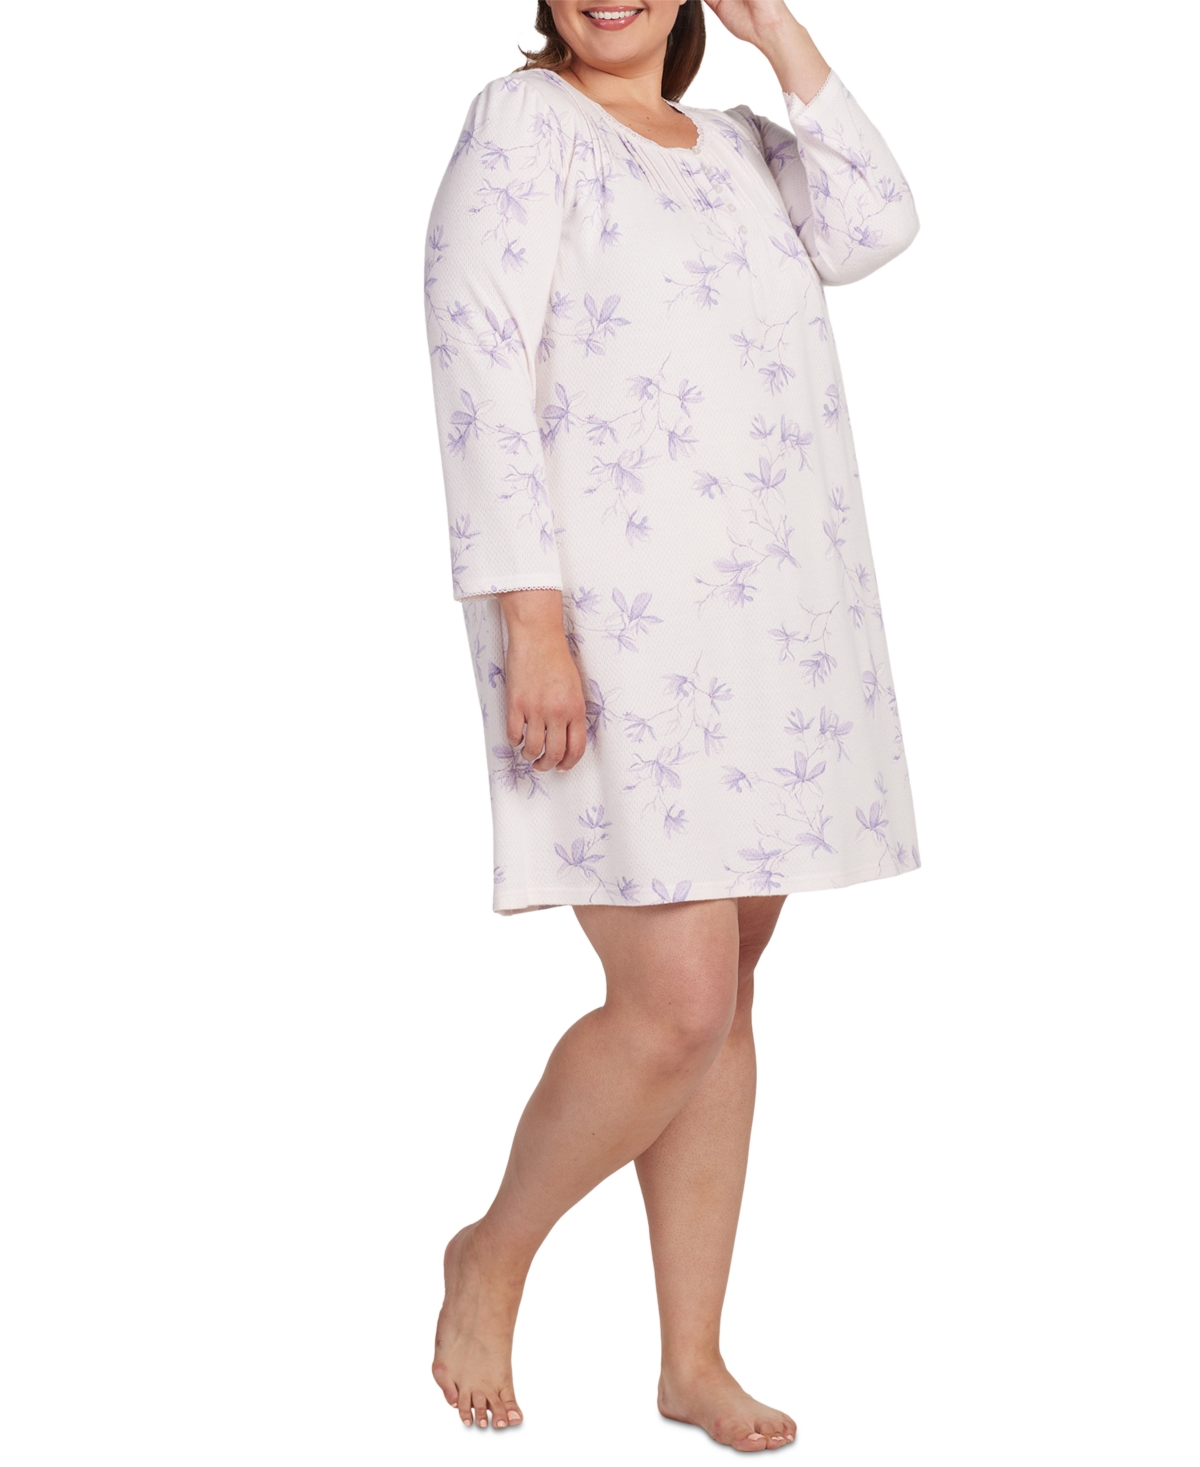 Plus Size Floral Lace-Trim Nightgown - Peach/lilac Floral Stems